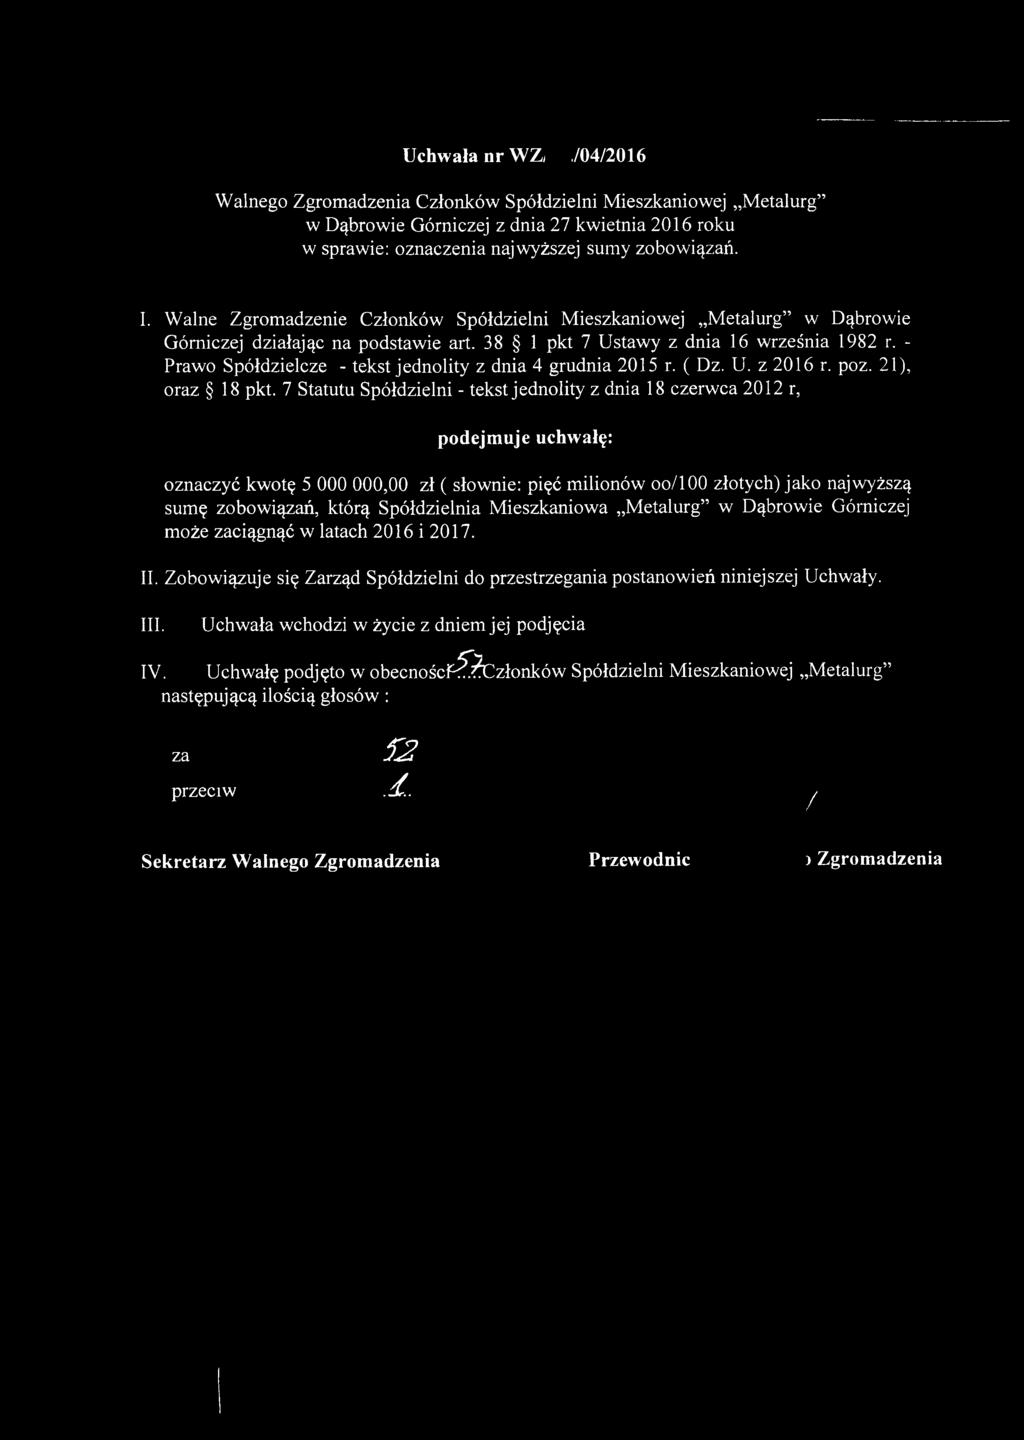 7 Statutu Spółdzielni - tekst jednolity z dnia 18 czerwca 2012 r, oznaczyć kwotę 5 000 000,00 zł ( słownie: pięć